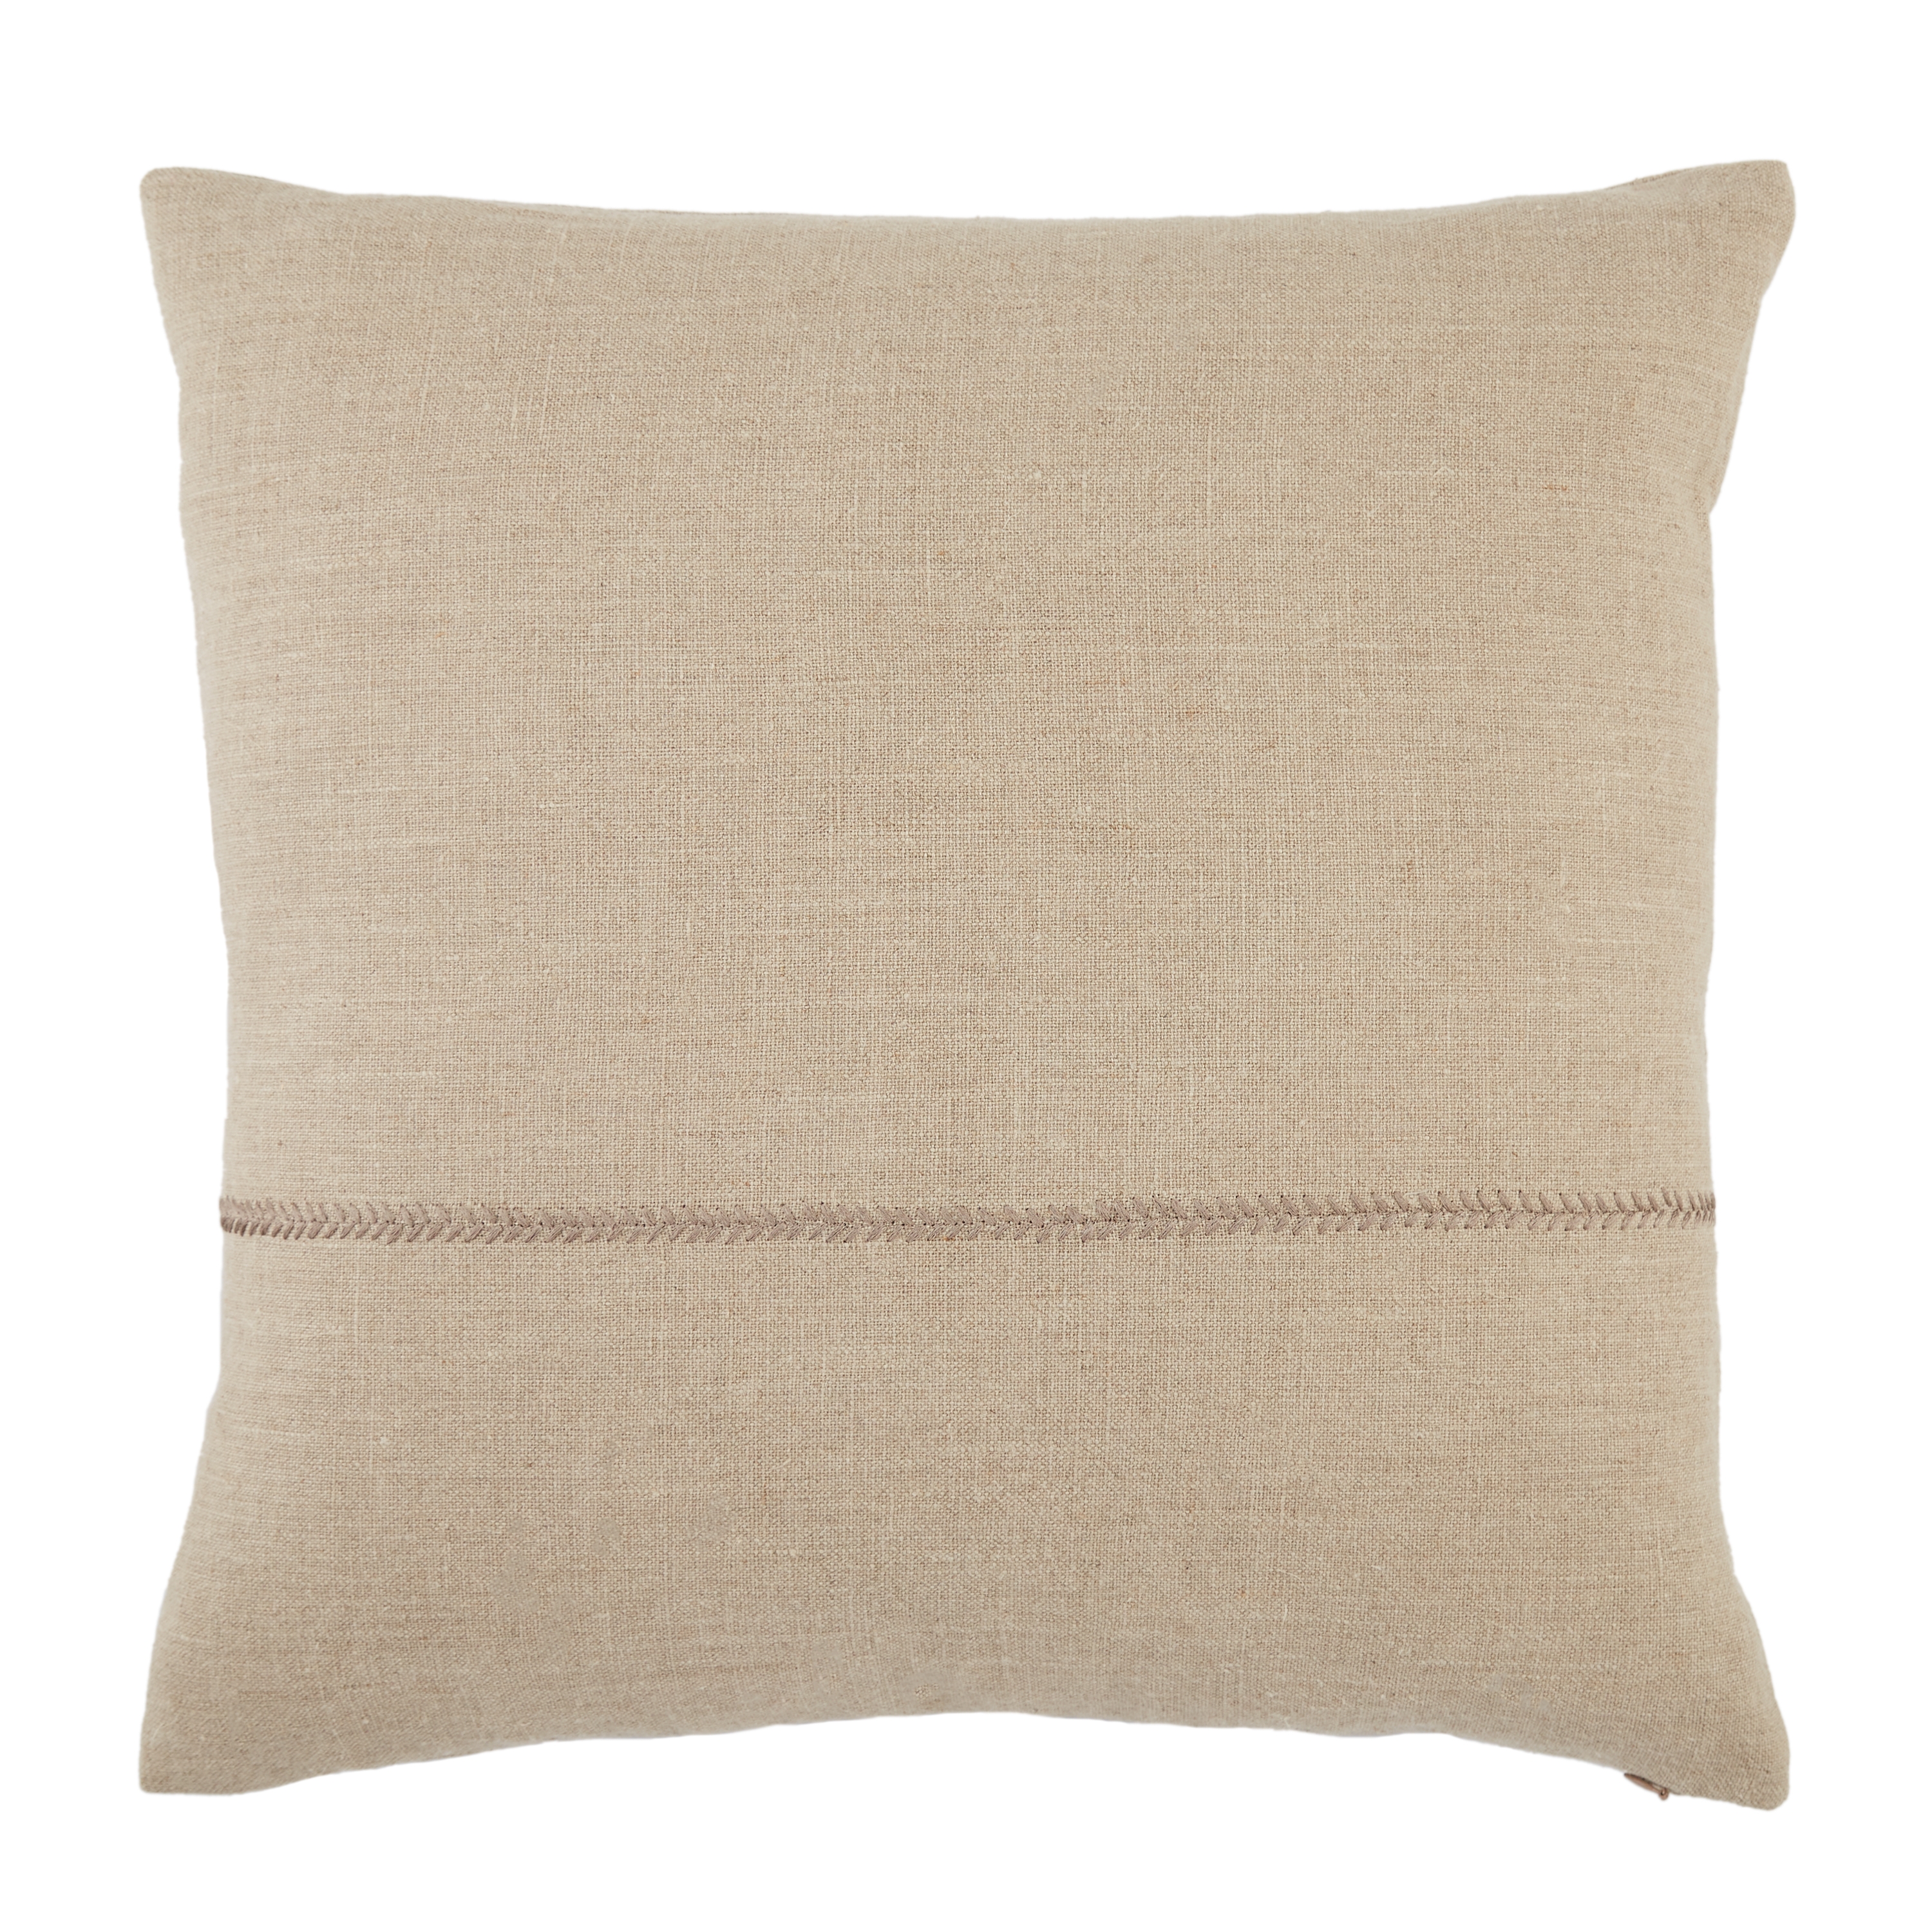 Ortiz Pillow, Beige, 22" x 22" - Image 0